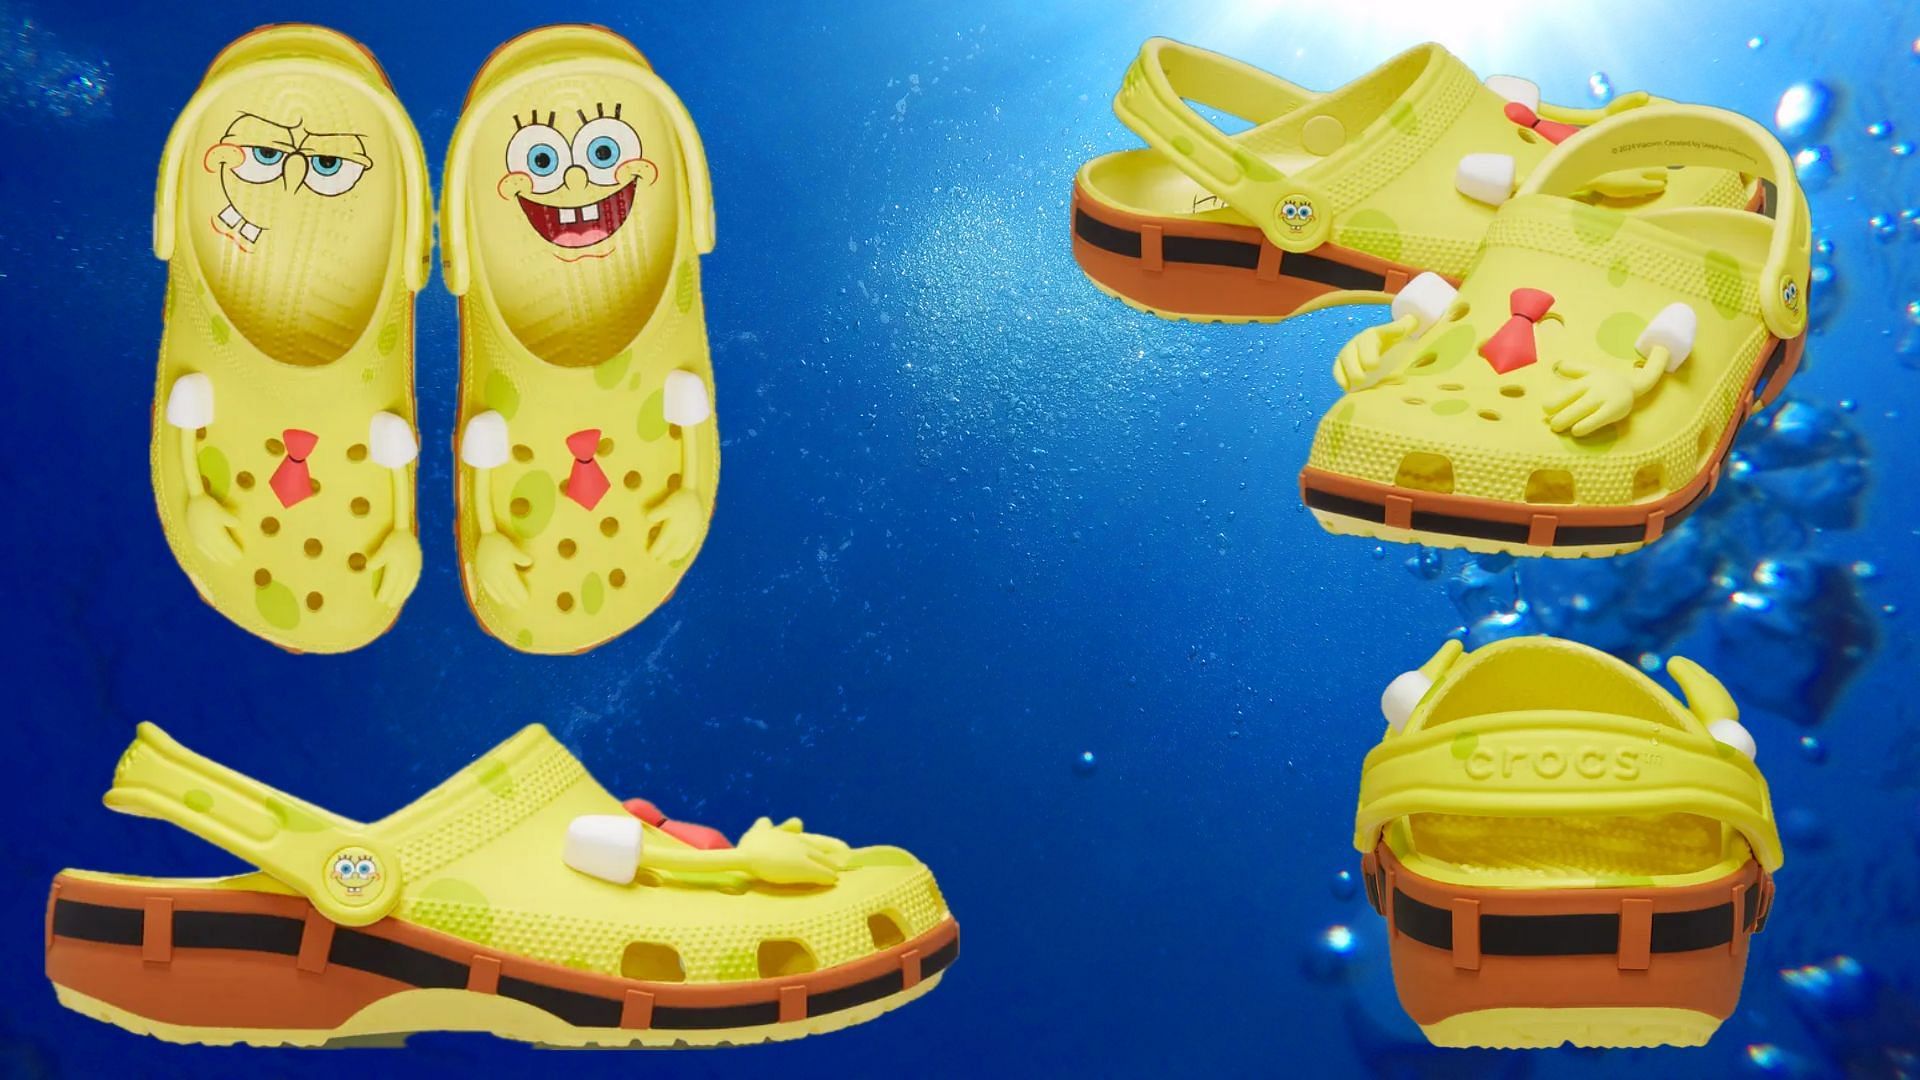 Closer look at the SpongeBob Squarepants x Crocs Classic Clogs SpongeBob (Image via Instagram/@cop_o_clock)